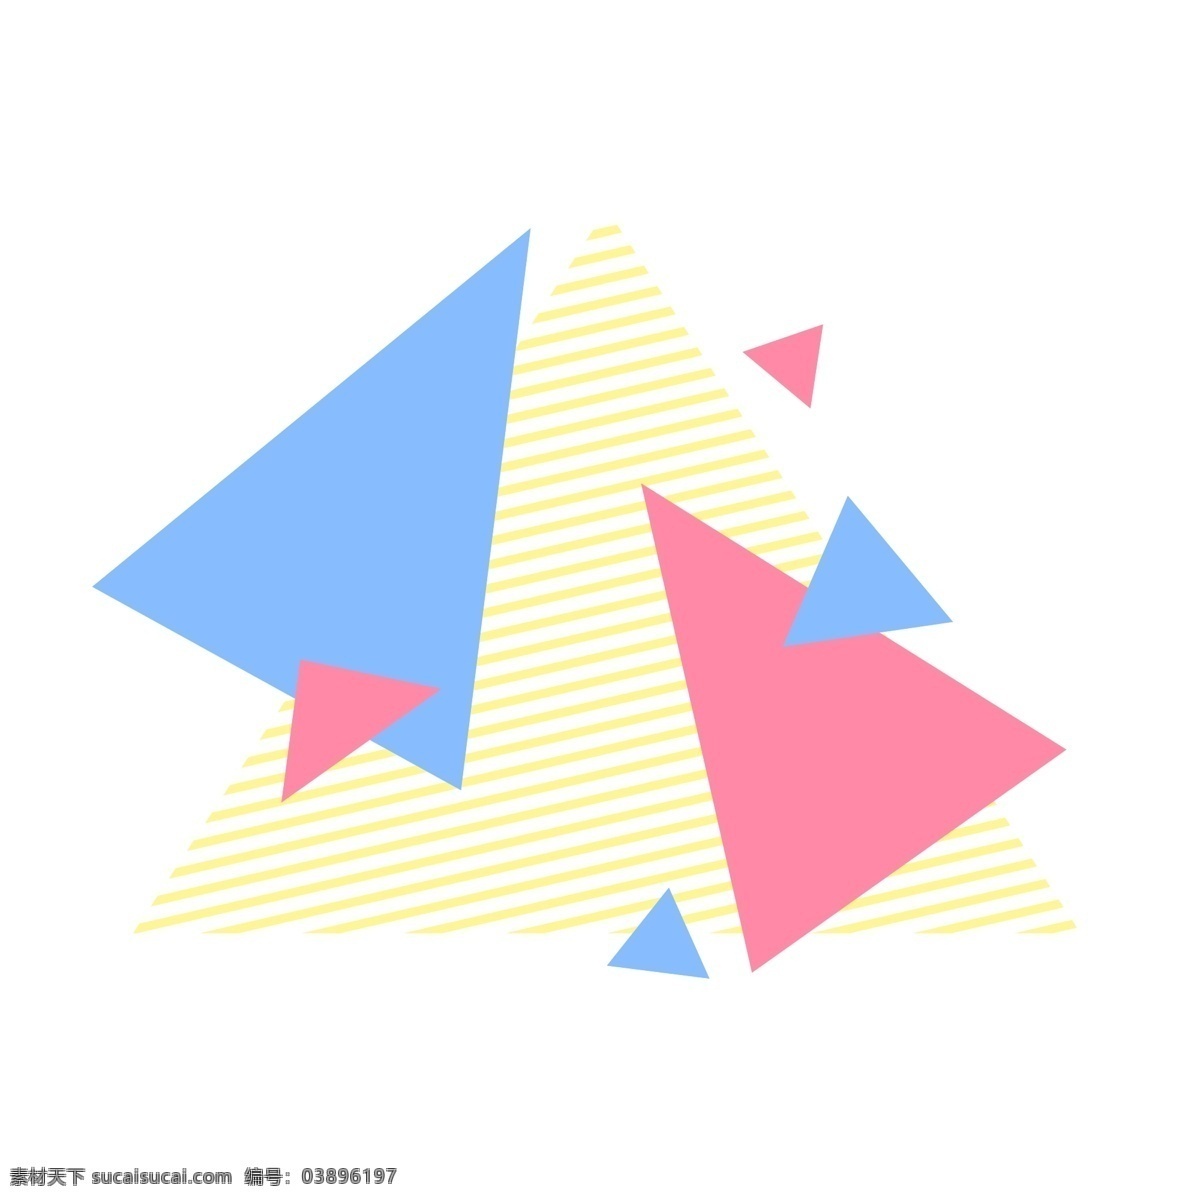 彩色 三角 几何 不规则 组合 三角形 几何组合 不规则图形 三角组合 彩色三角组合 不规则三角